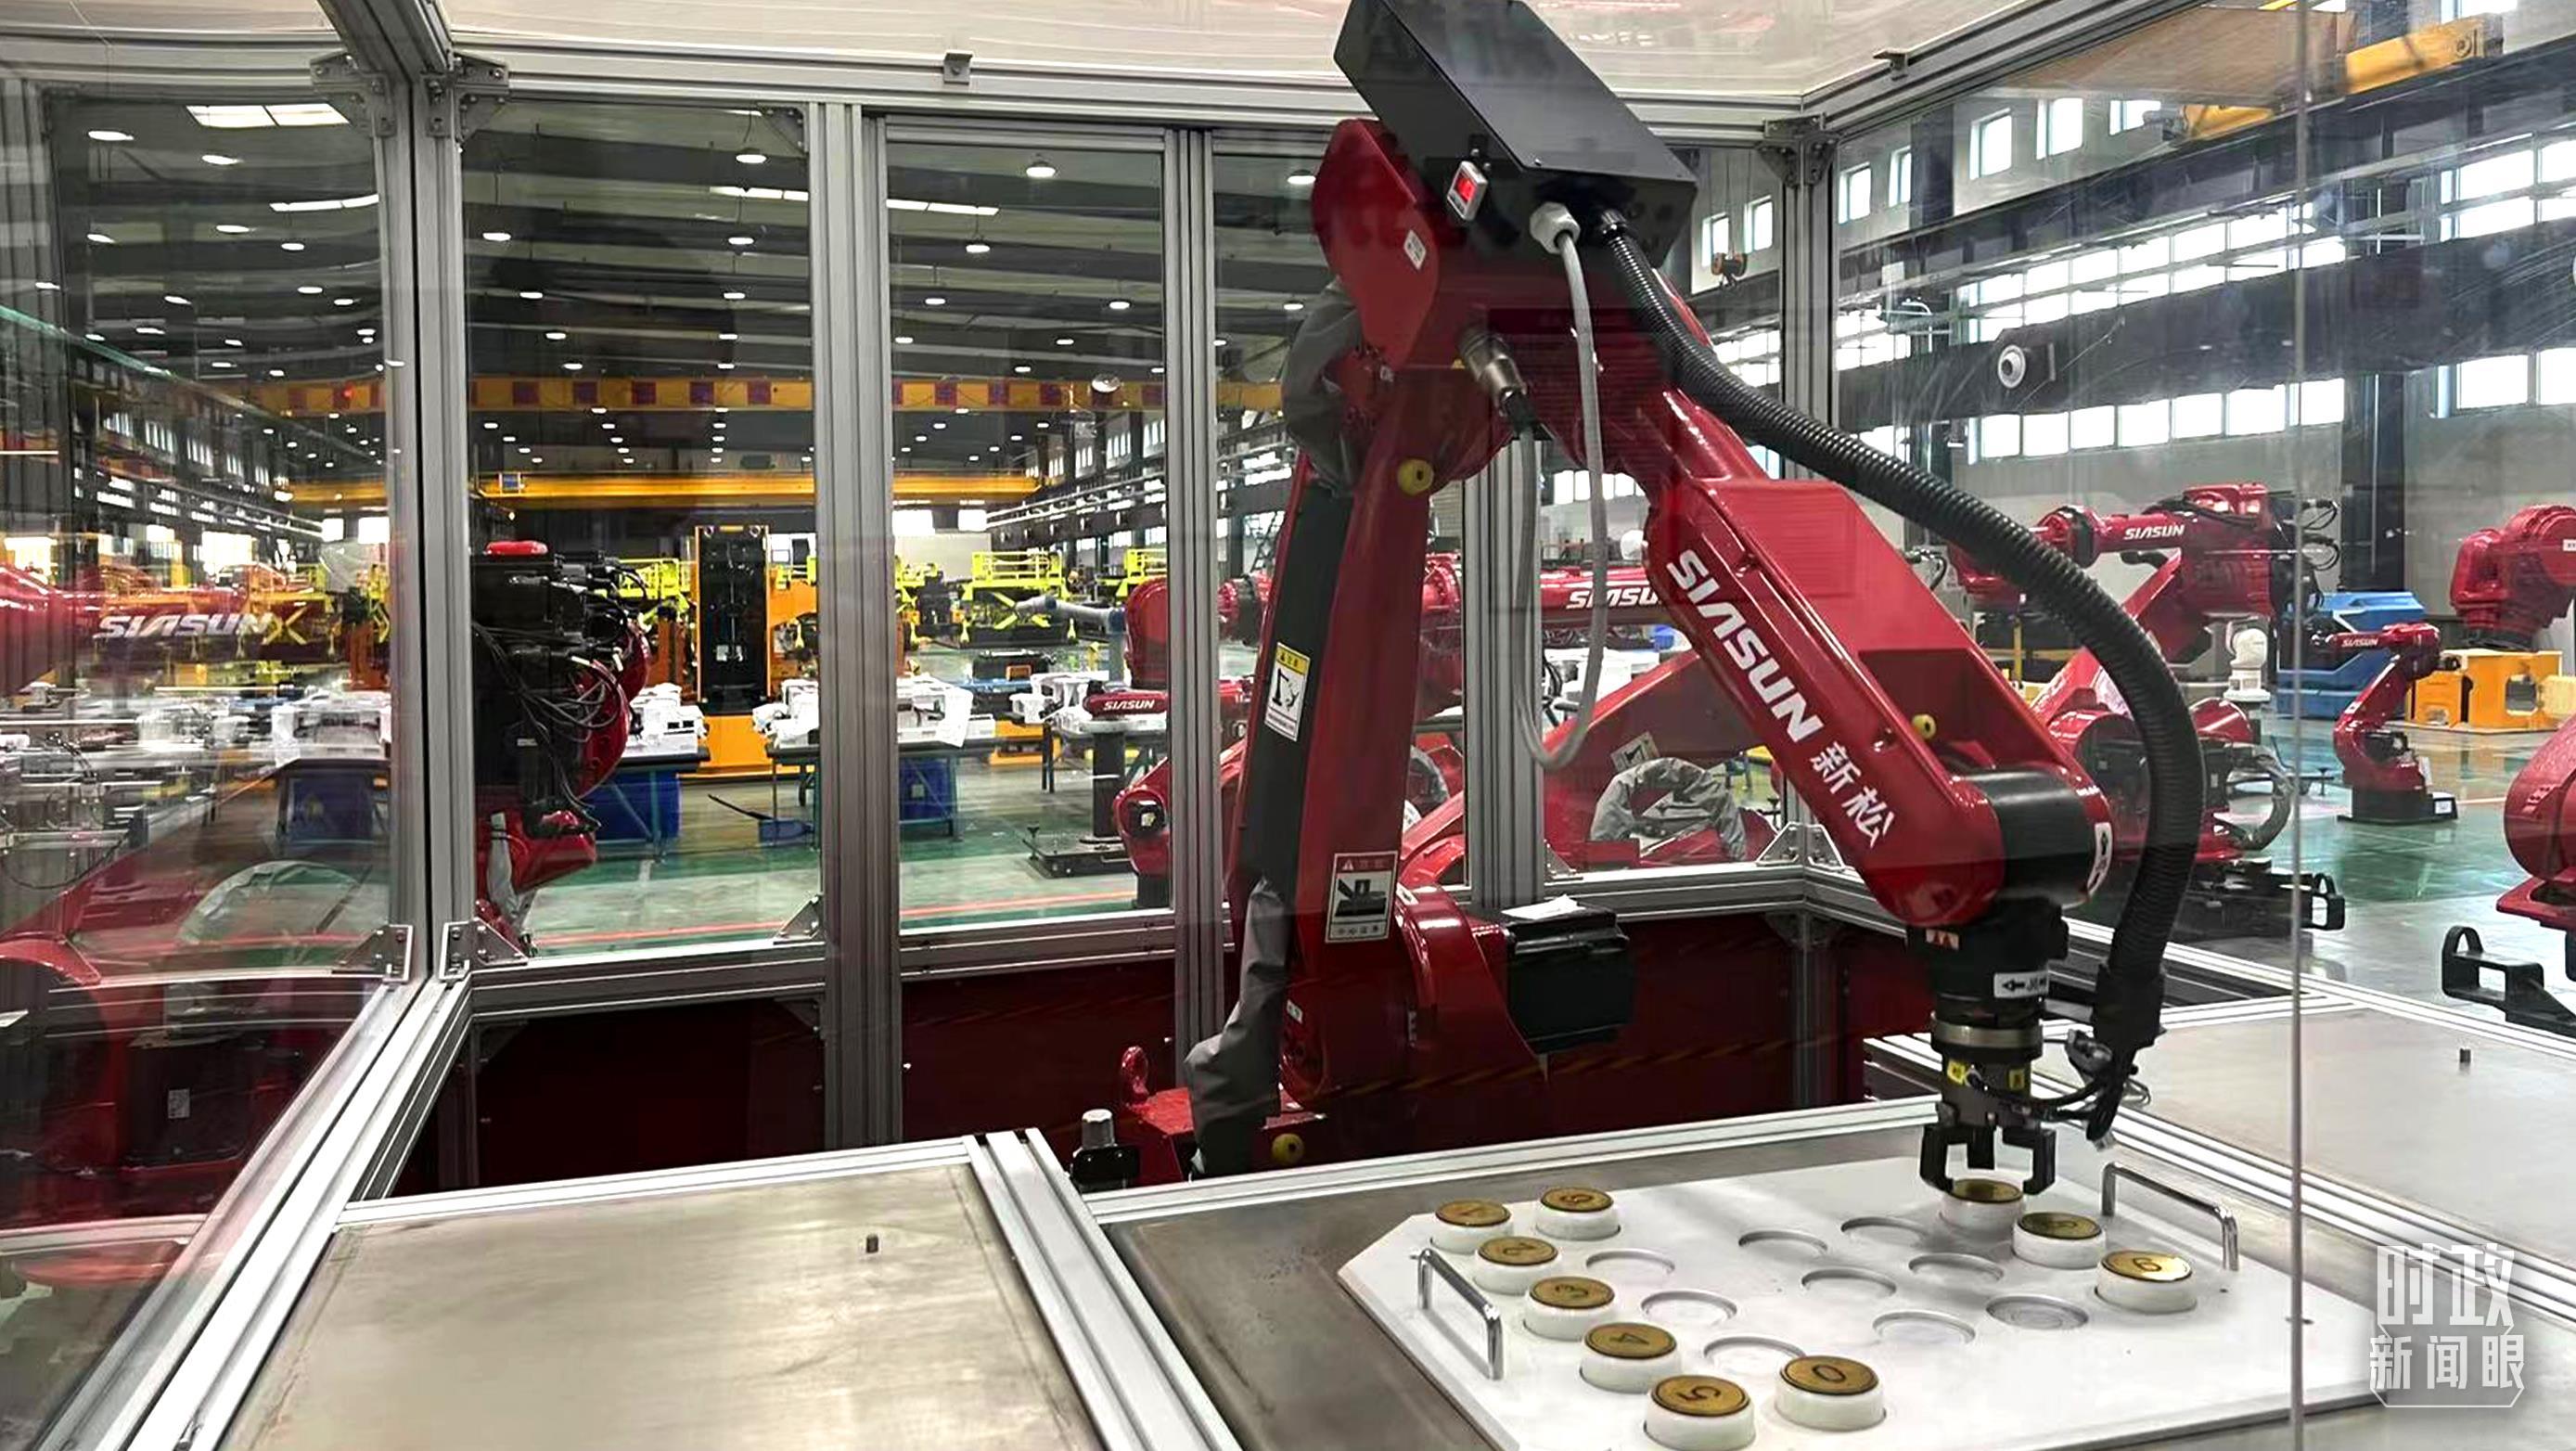 △新松公司，正在进行演示工作的工业机器人。（总台央视记者赵化拍摄）